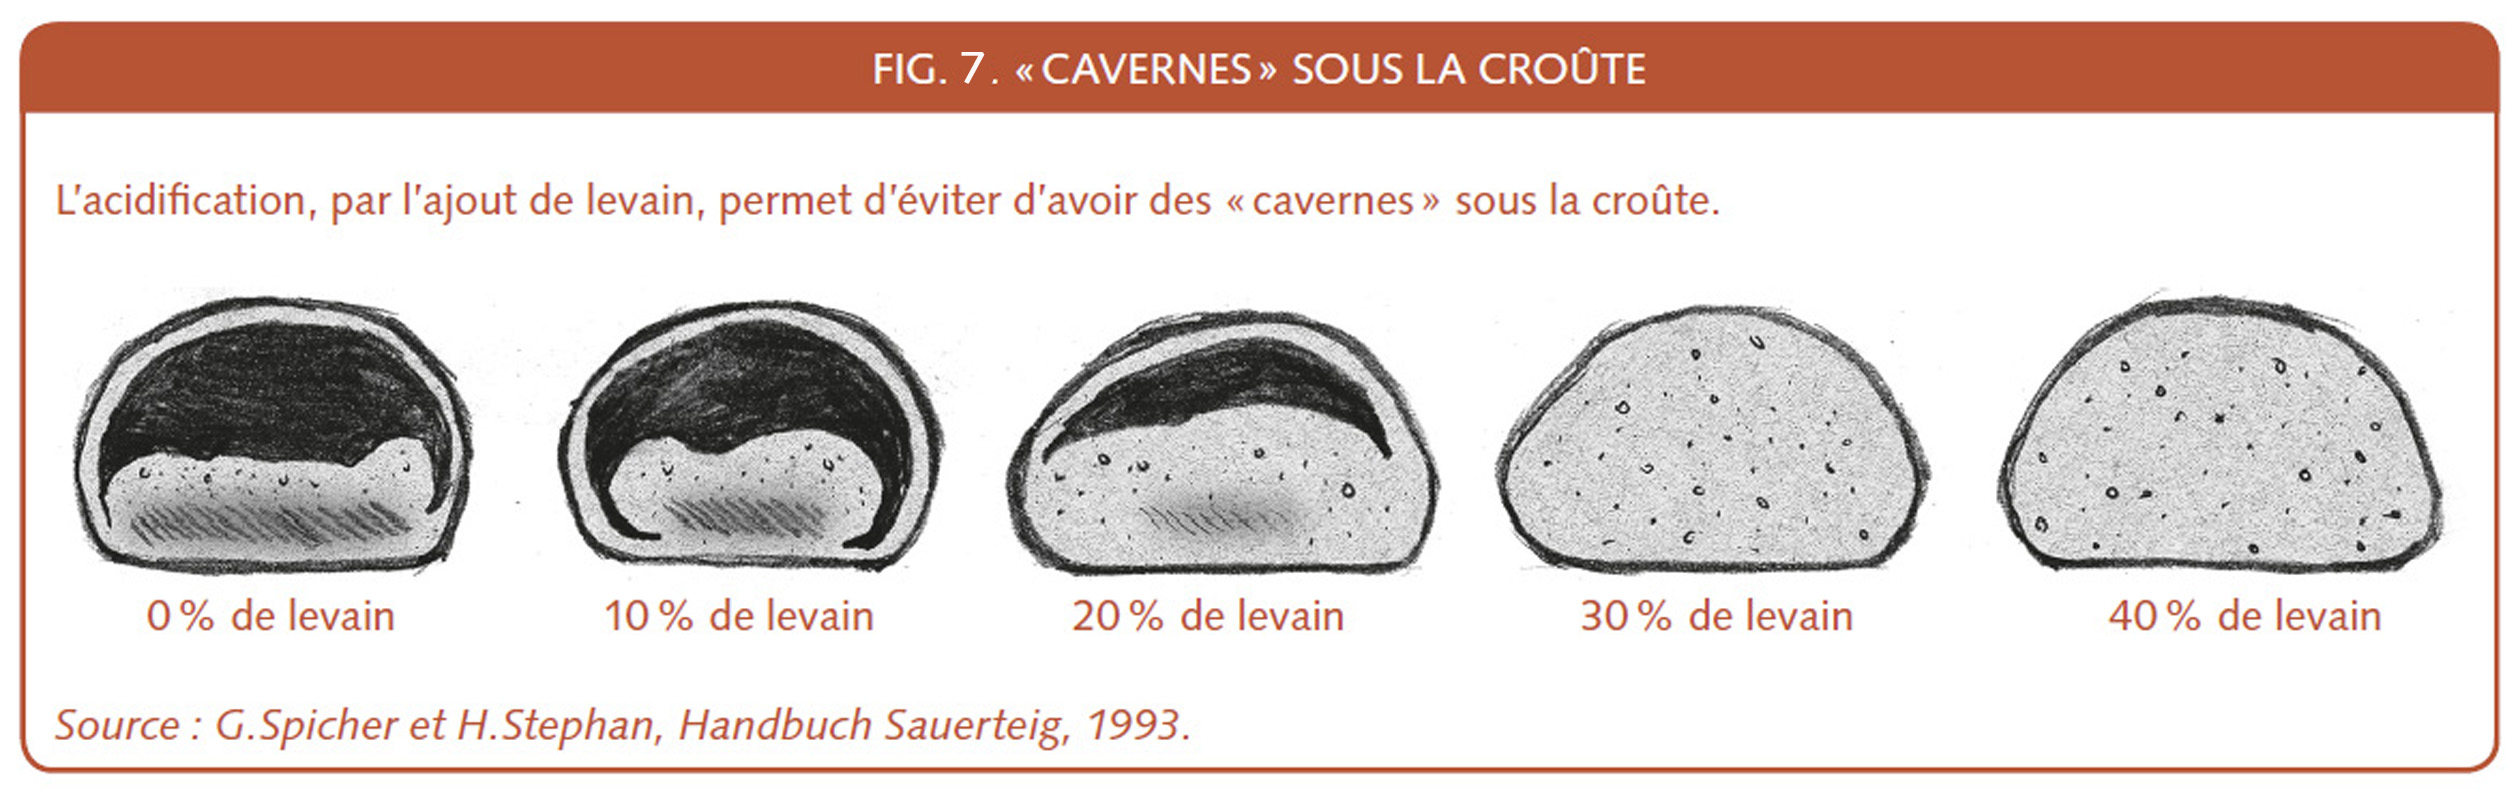 19_198_Cavernes sous la croute.jpg